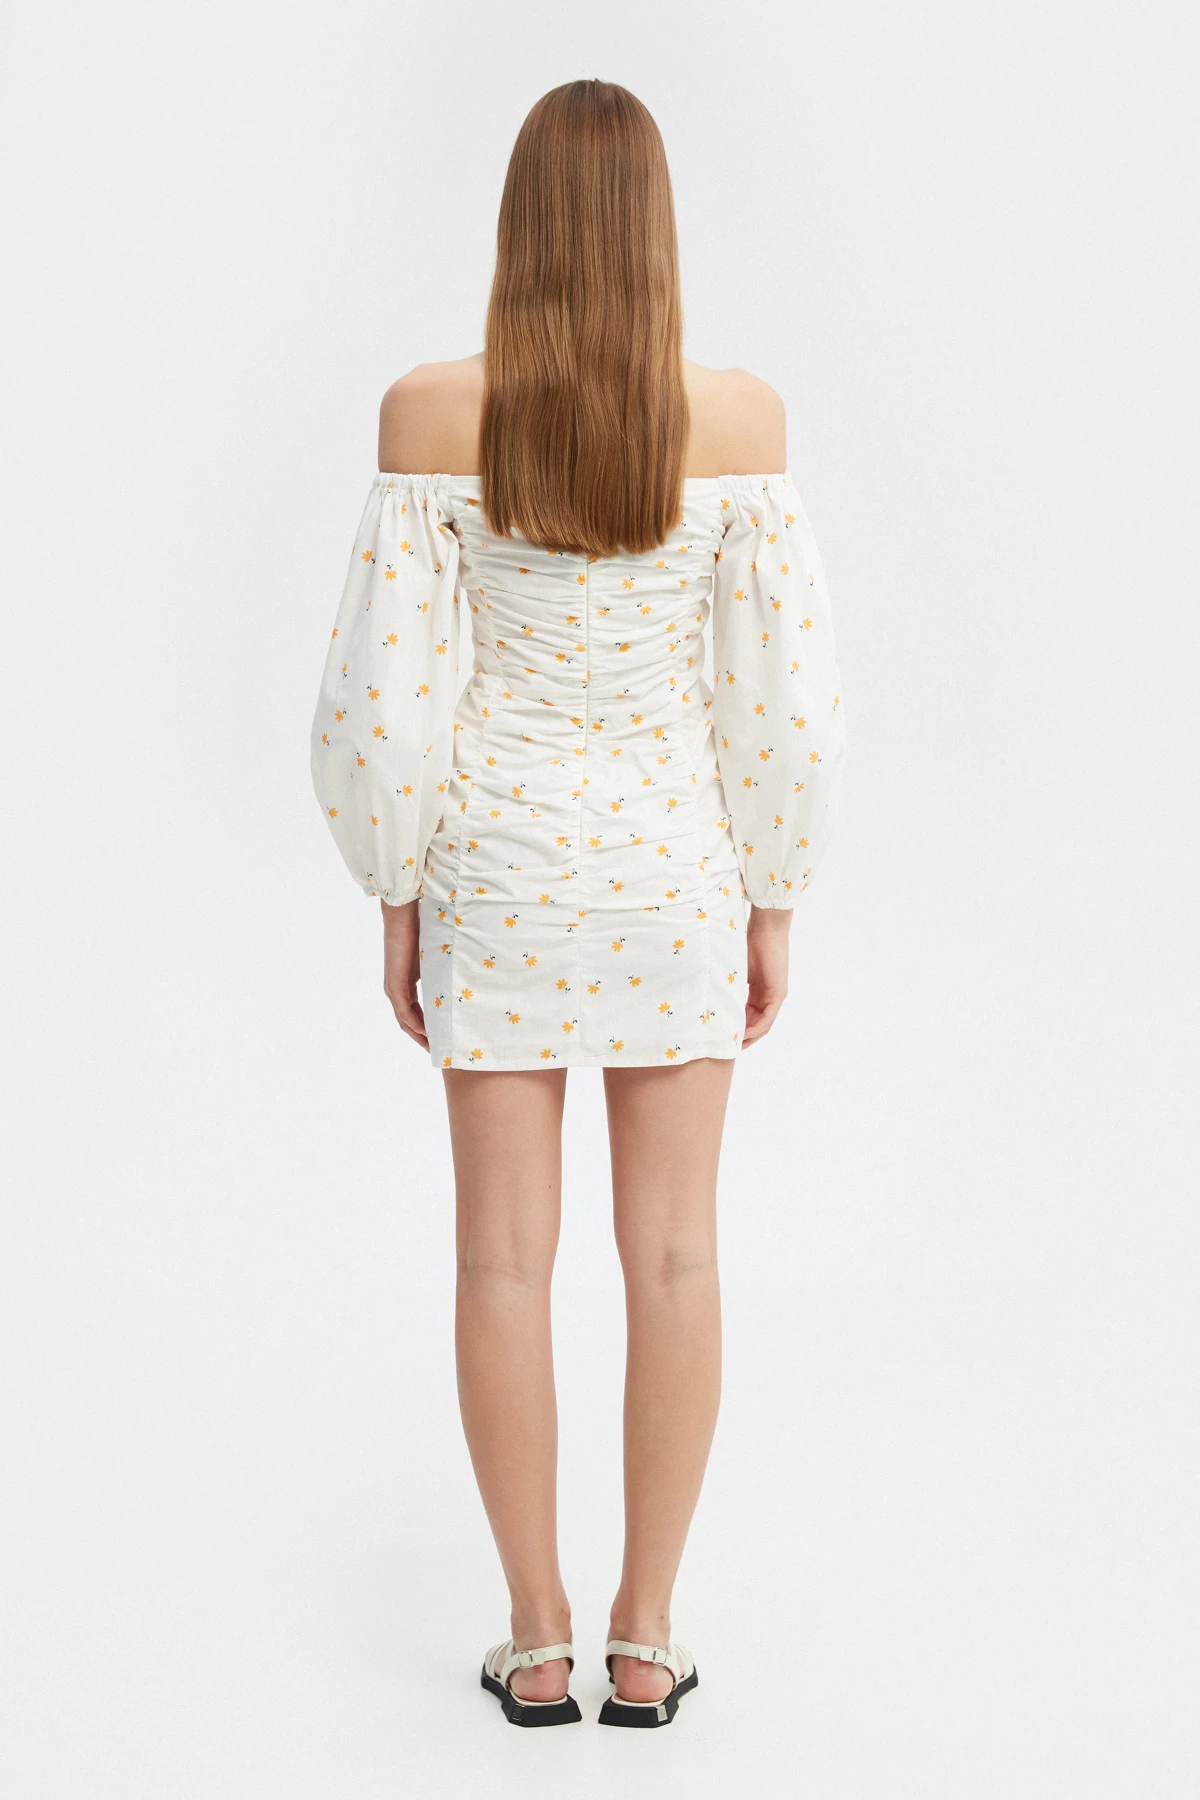 Біла сукня з драпіруванням з бавовни в авторський принт жовті квіти , фото 6